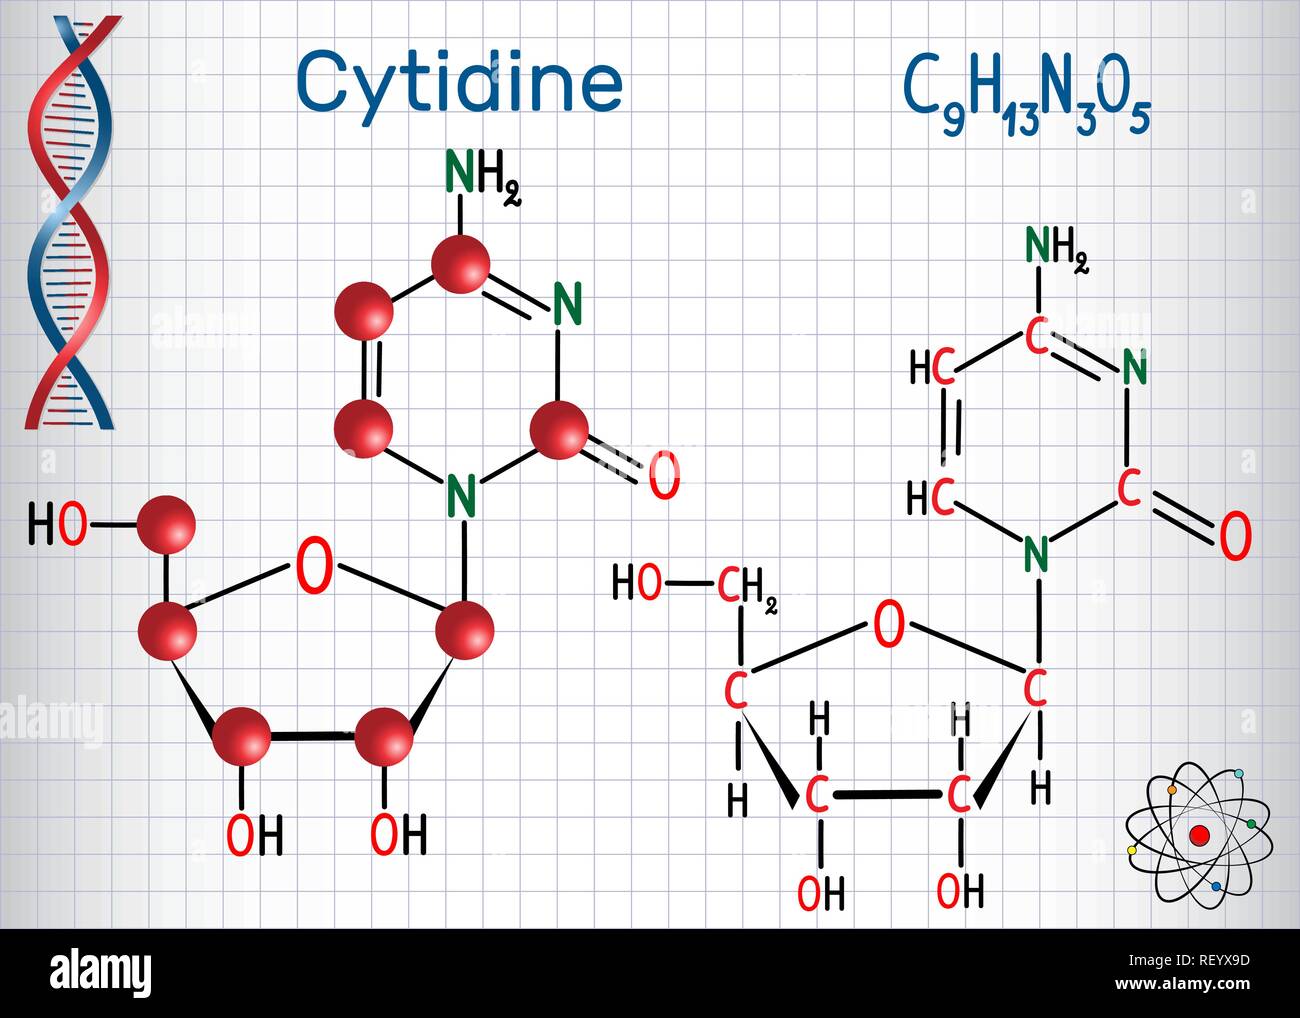 Citidina - pirimidina nucleoside molecola, è parte importante del RNA. Formula chimica di struttura e la molecola modello. Foglio di carta in una gabbia. Vettore Illustrazione Vettoriale